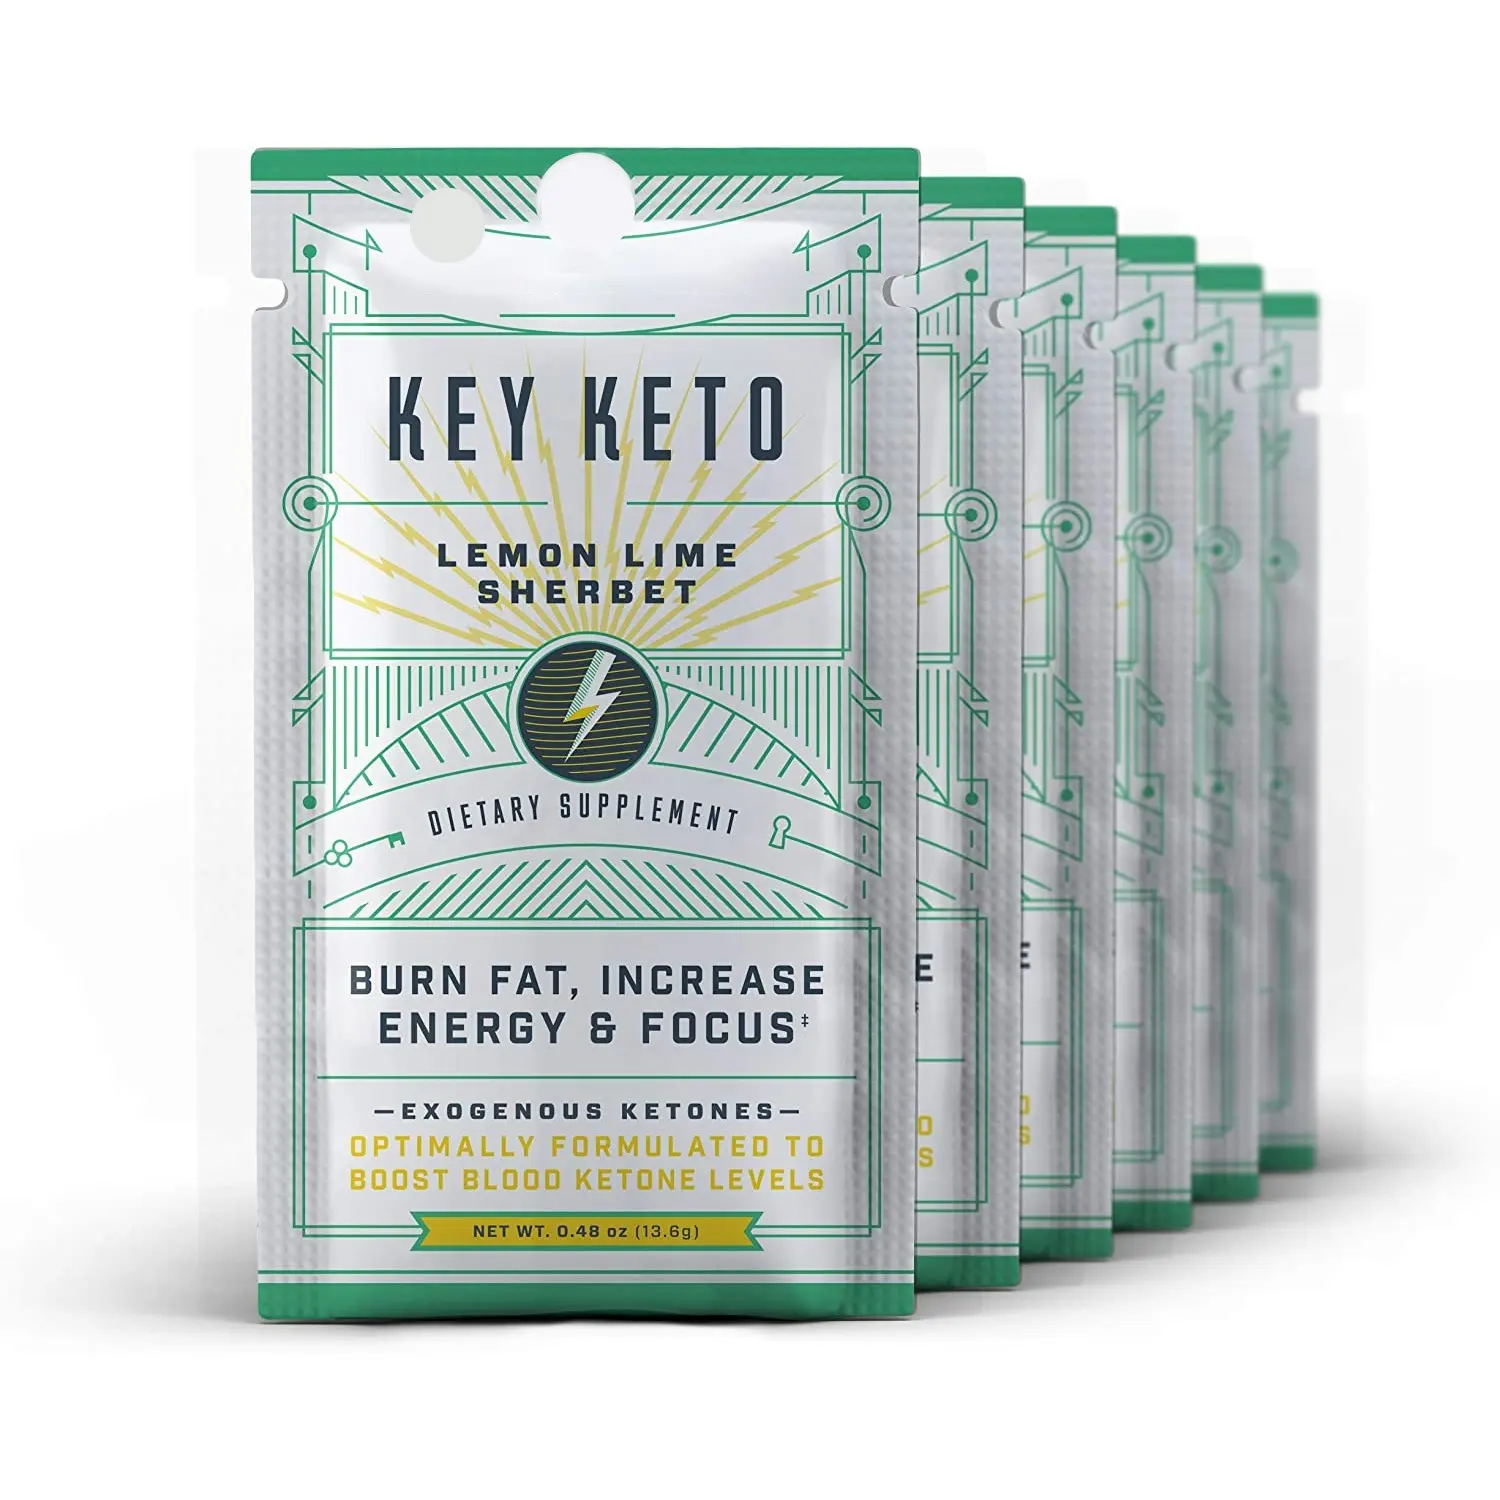 Keto Exogene Keton Supplement 6 Single-Dienen Pakketten Voor Ketosis Instant Keto Mix Plaatst Je In Ketosis Quick Helpt keto Dieet